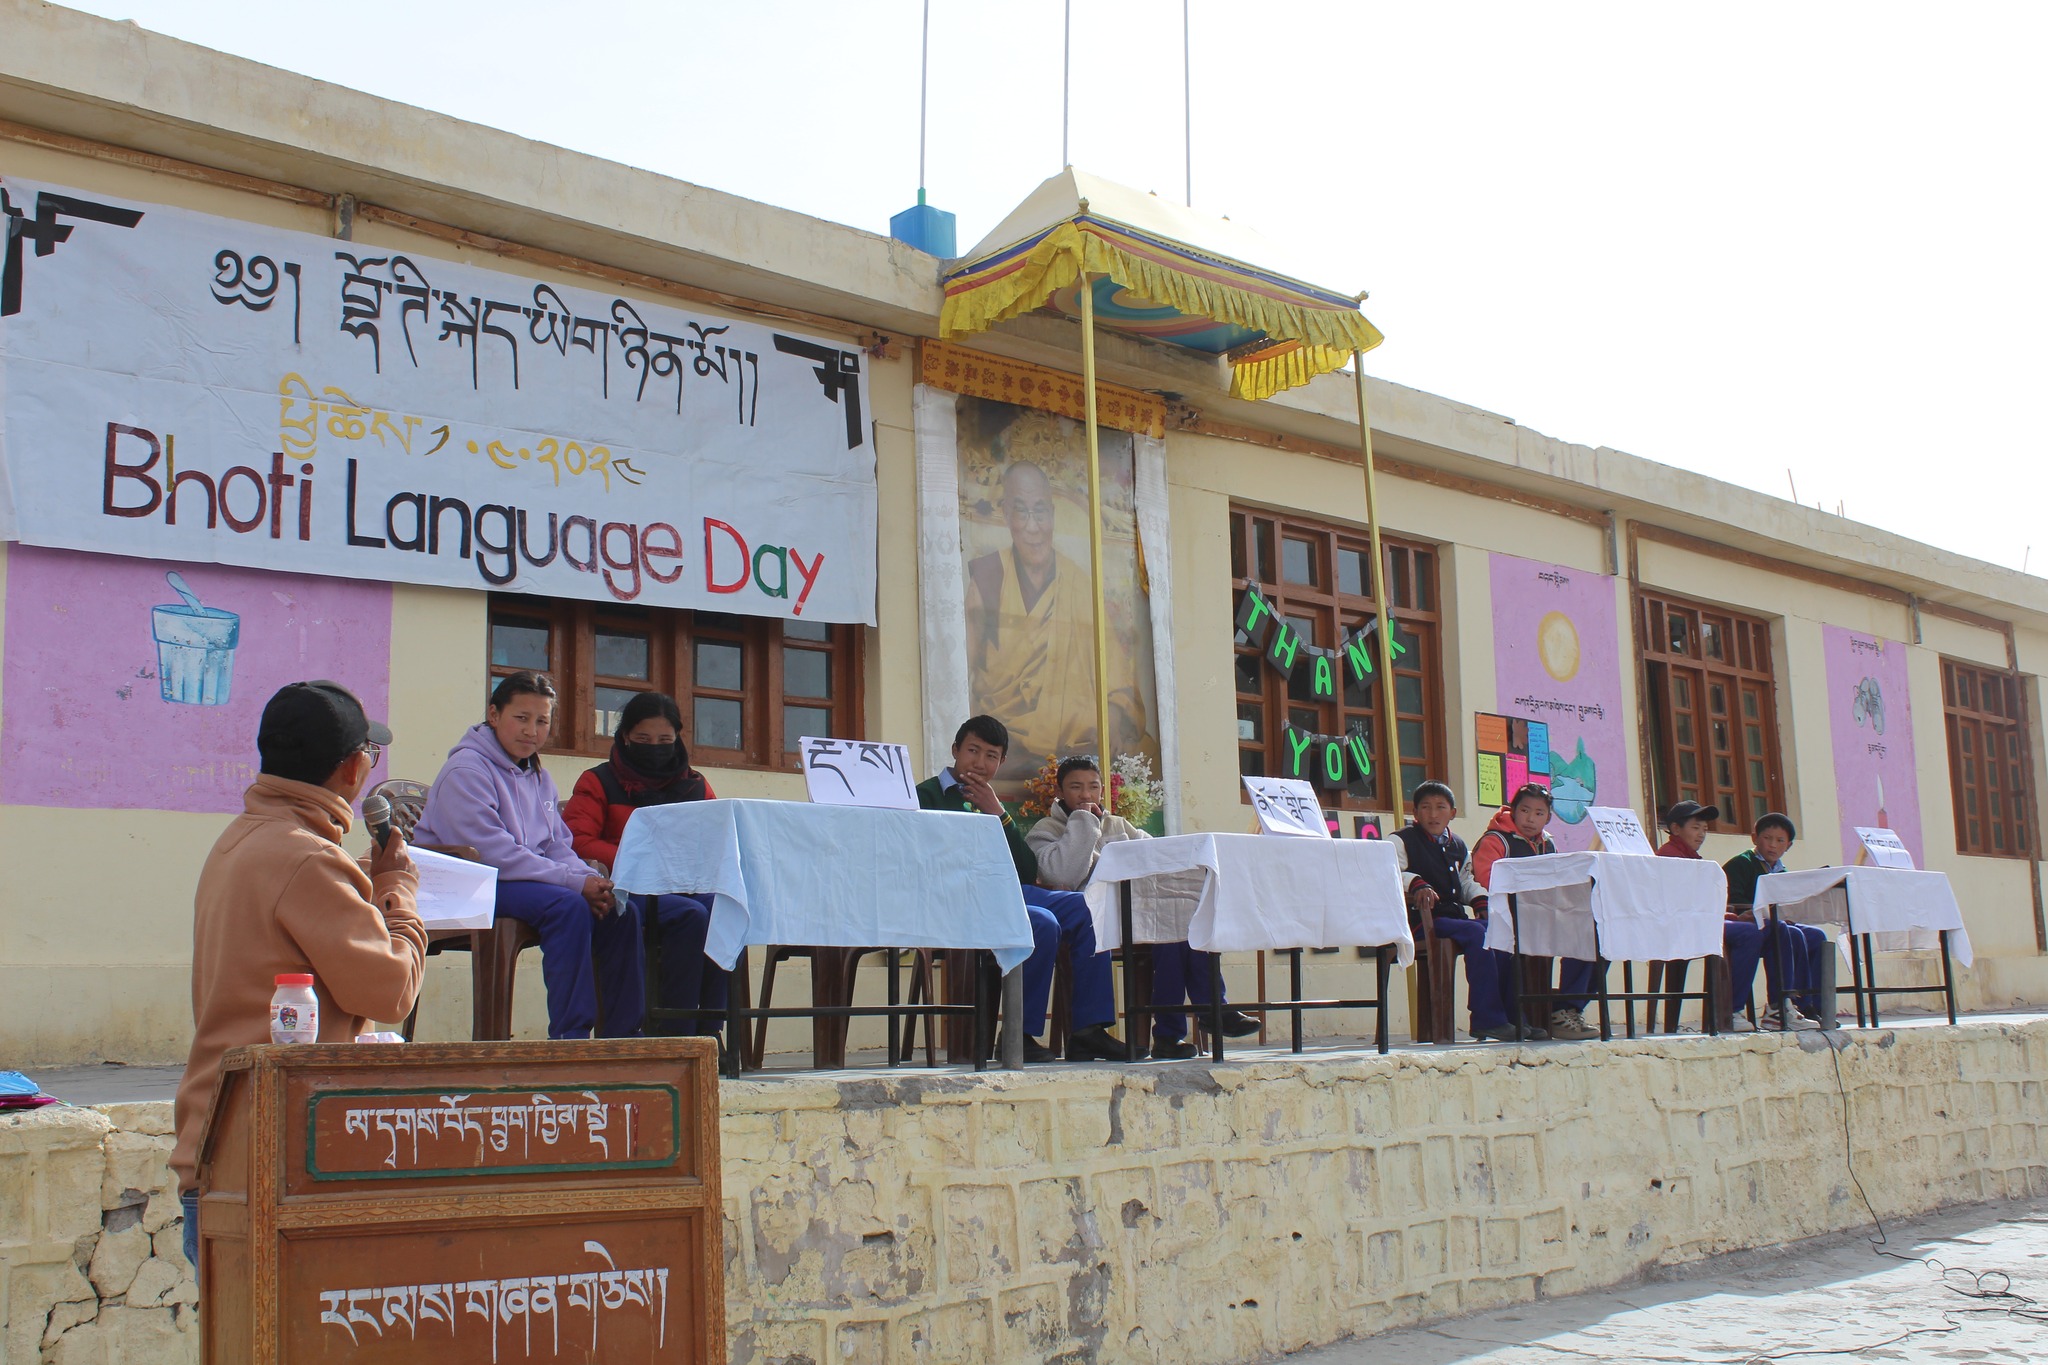 Bhoti Language Day